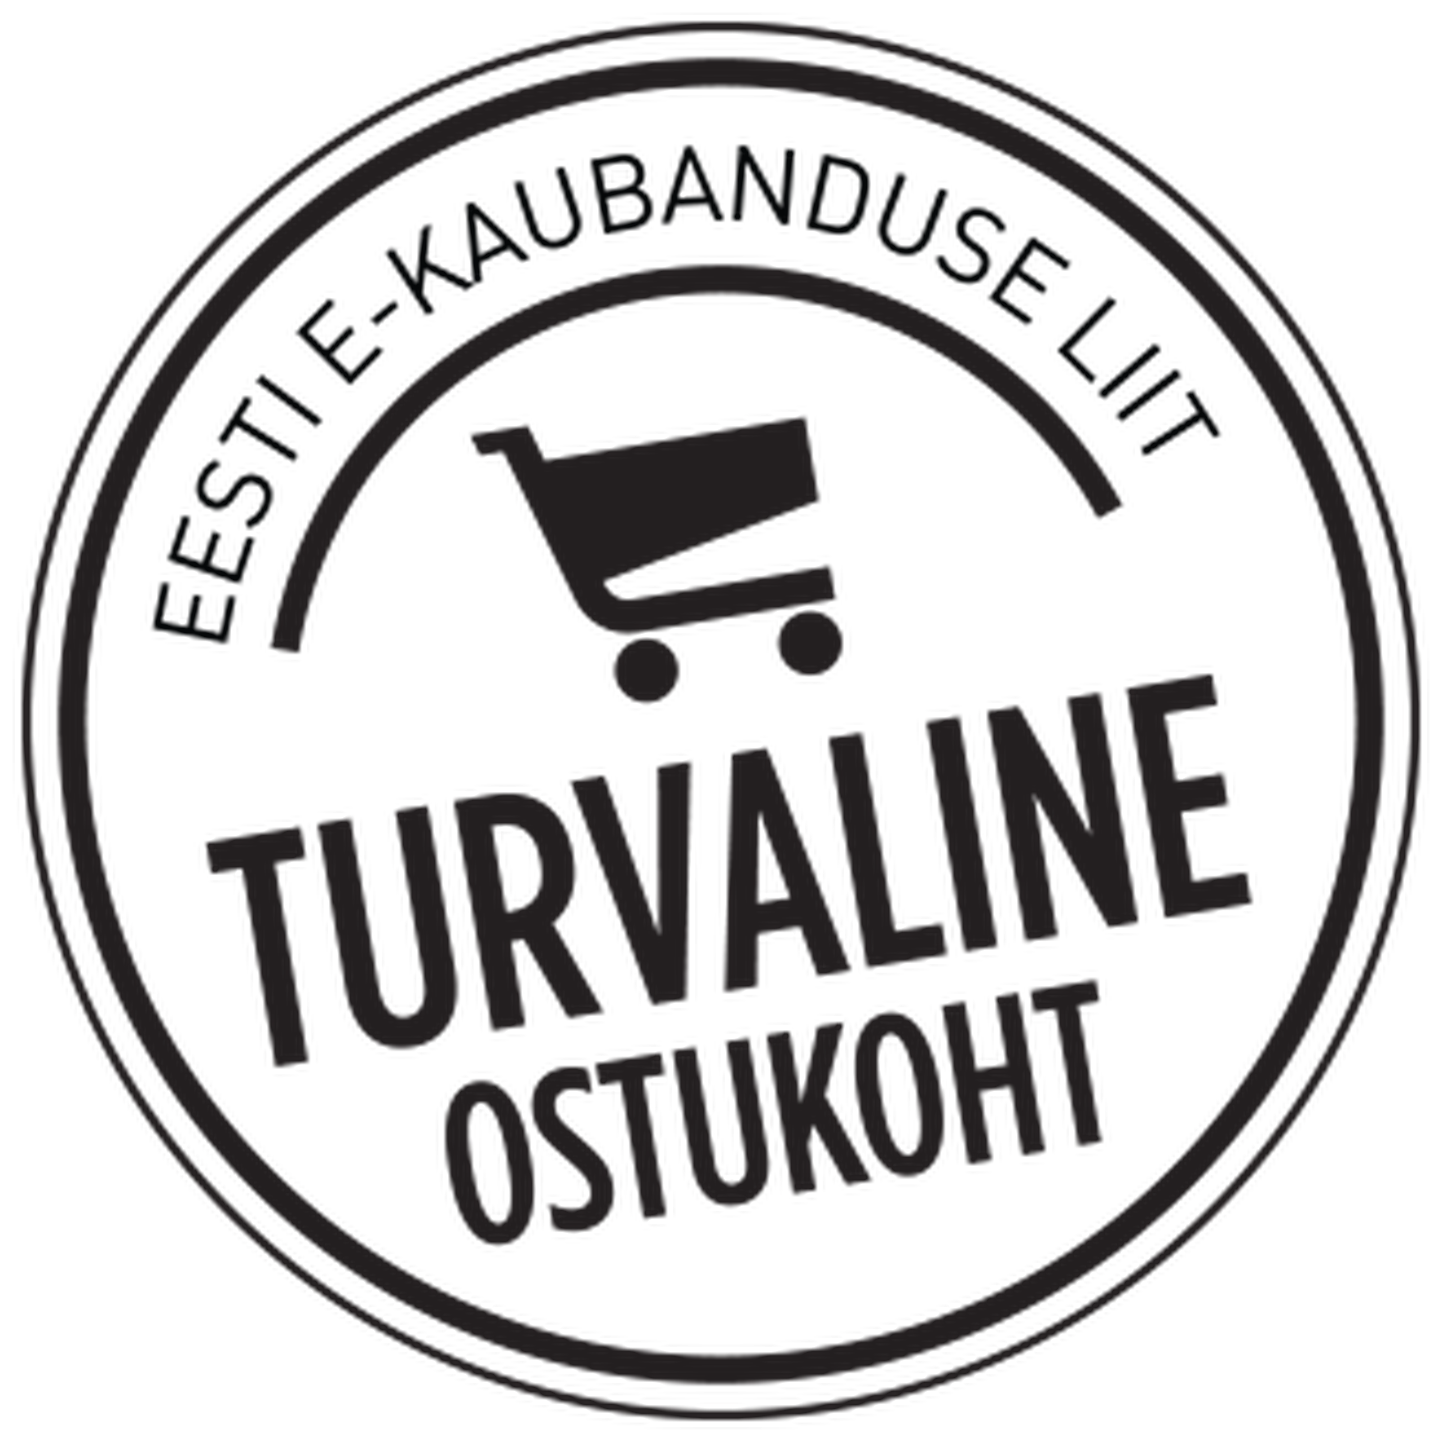 Alates juunist 2013 võttis Eesti e-kaubanduse Liit  kasutusele kvaliteedimärgise Turvaline Ostukoht uue kujunduse.